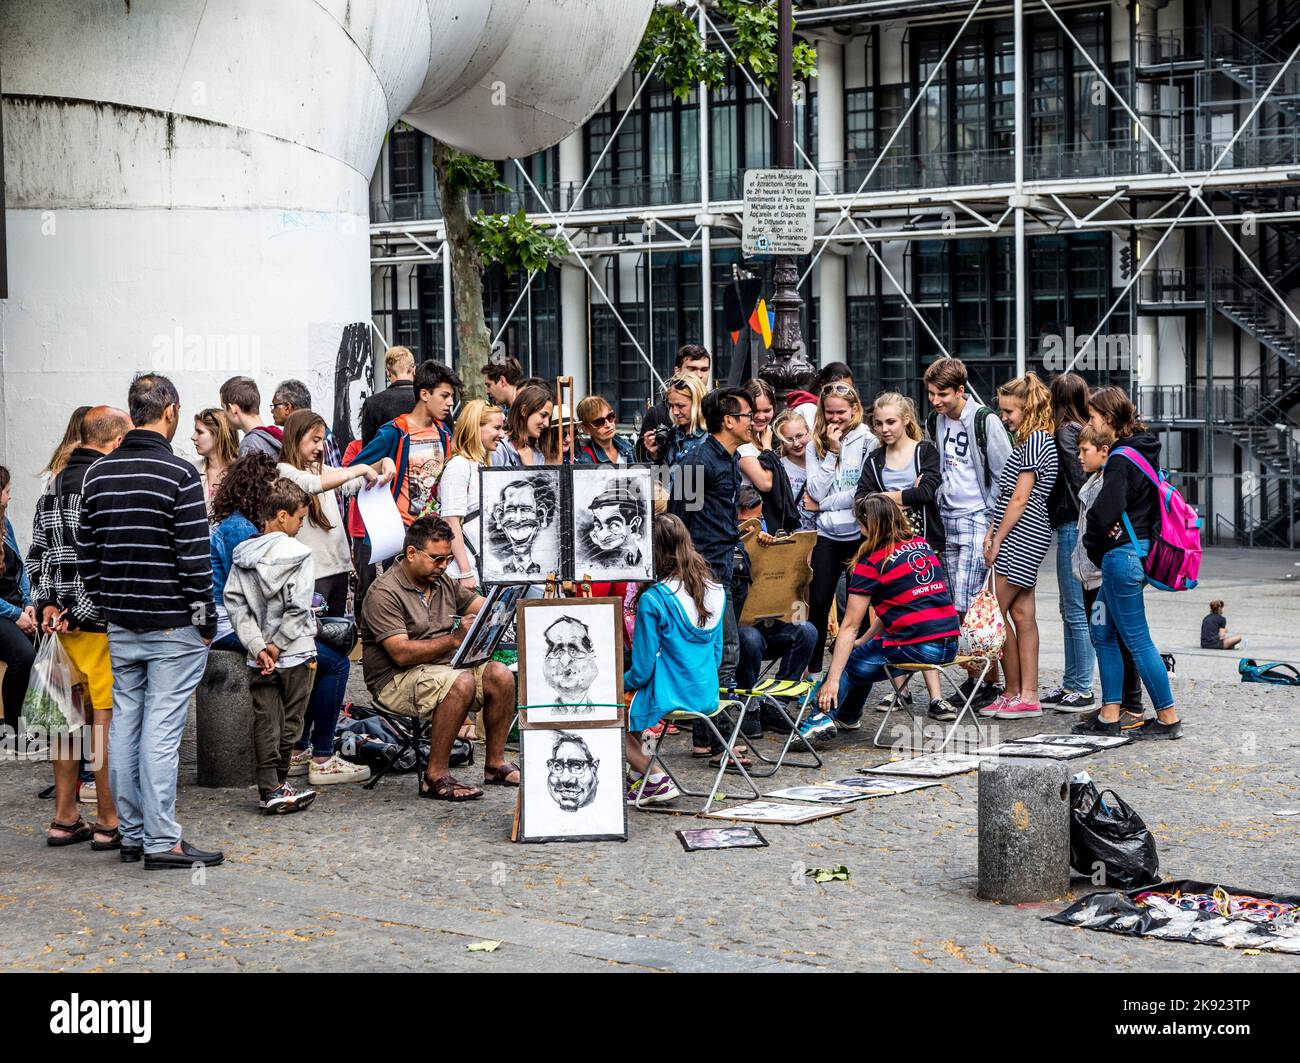 PARIGI, FRANCIA - 9 GIUGNO 2015: I giovani del centro pompidou si divertono a essere disegnati da artisti per piccoli soldi in pose divertenti. Foto Stock